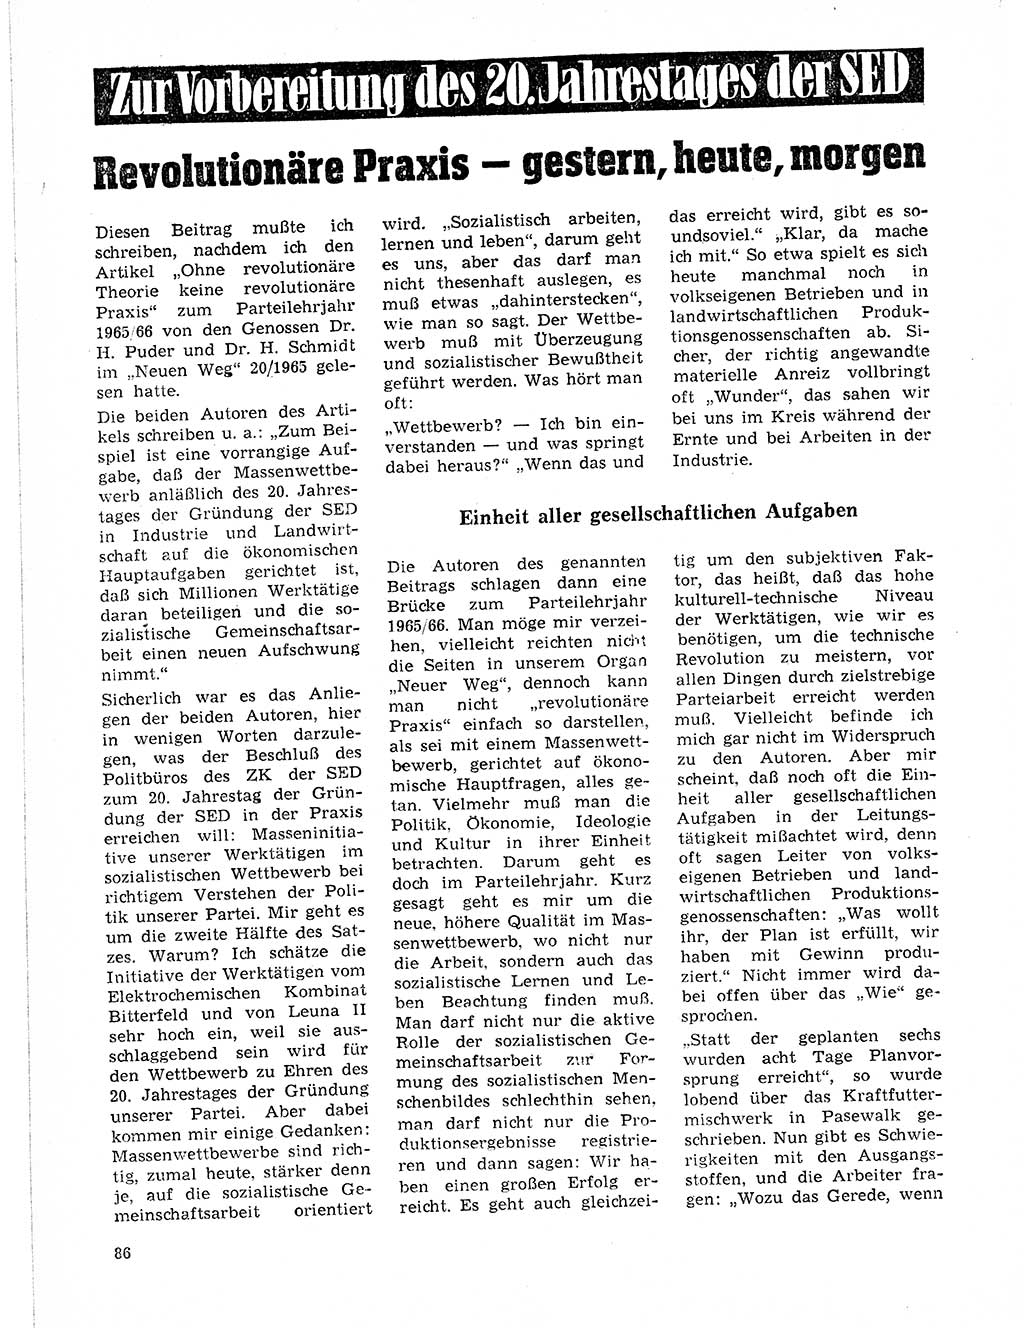 Neuer Weg (NW), Organ des Zentralkomitees (ZK) der SED (Sozialistische Einheitspartei Deutschlands) für Fragen des Parteilebens, 21. Jahrgang [Deutsche Demokratische Republik (DDR)] 1966, Seite 86 (NW ZK SED DDR 1966, S. 86)